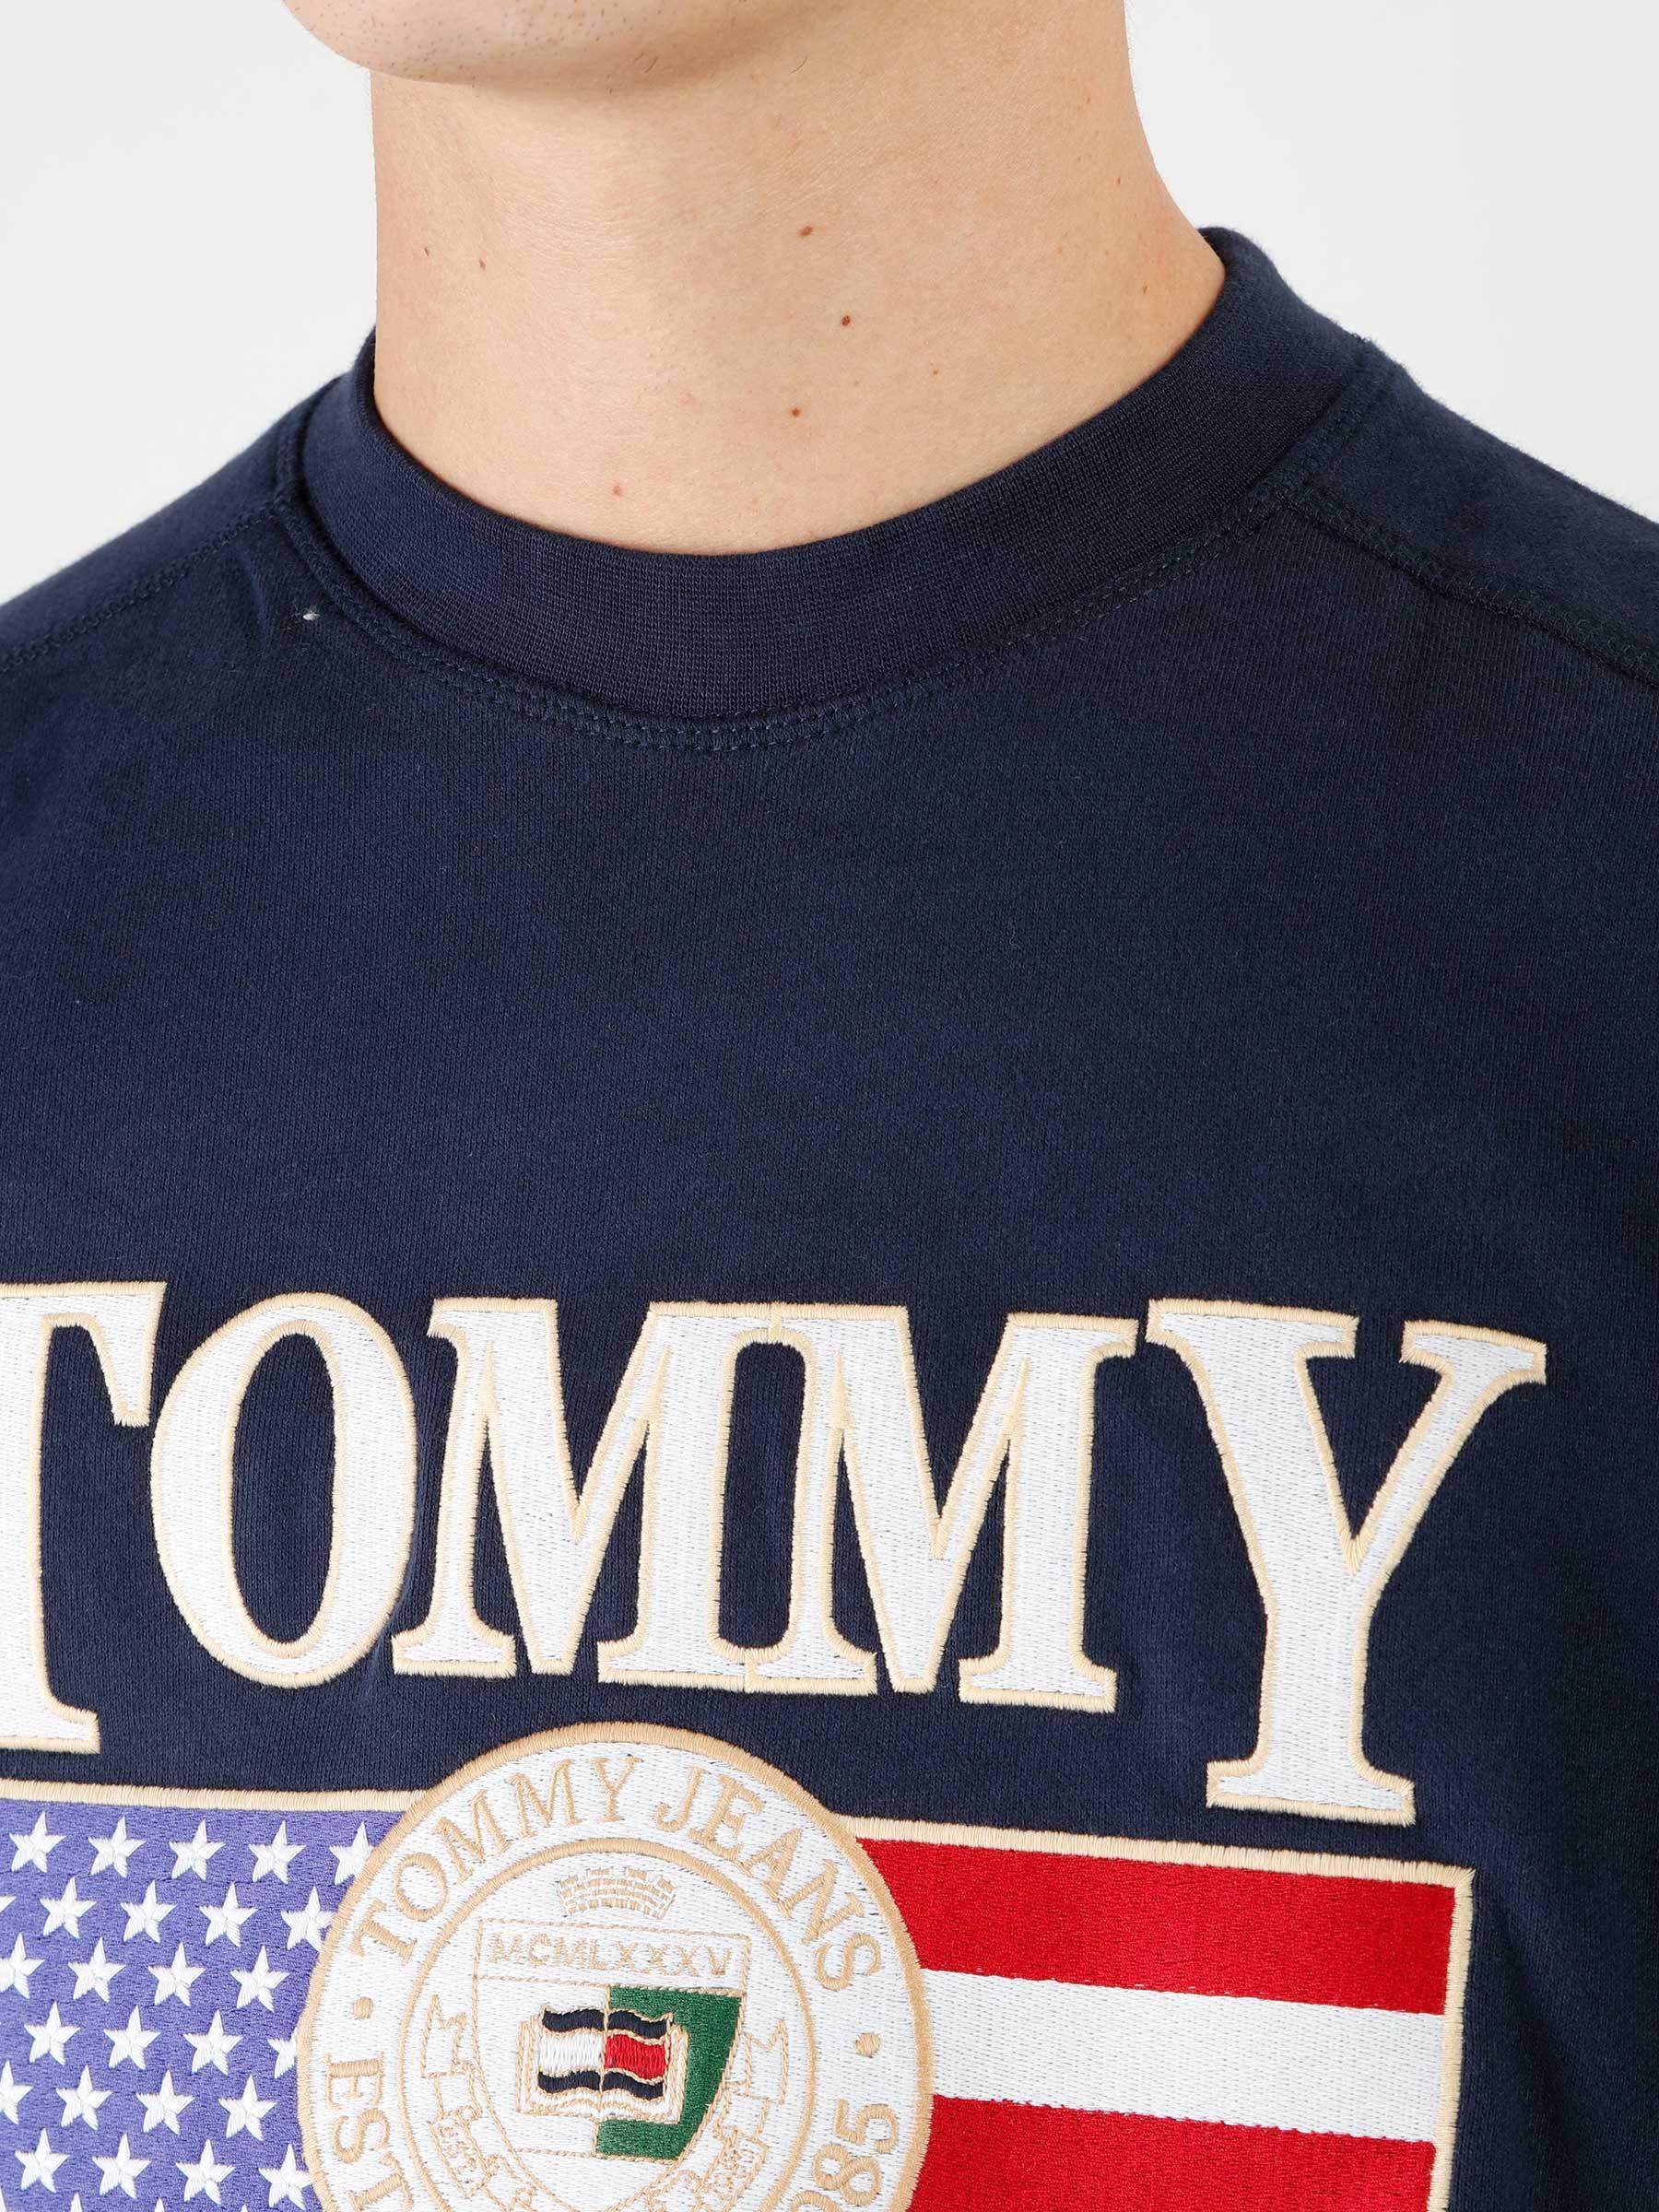 Jeans TJM Tommy Crewneck Navy TJ Luxe Freshcotton Twilight - Boxy